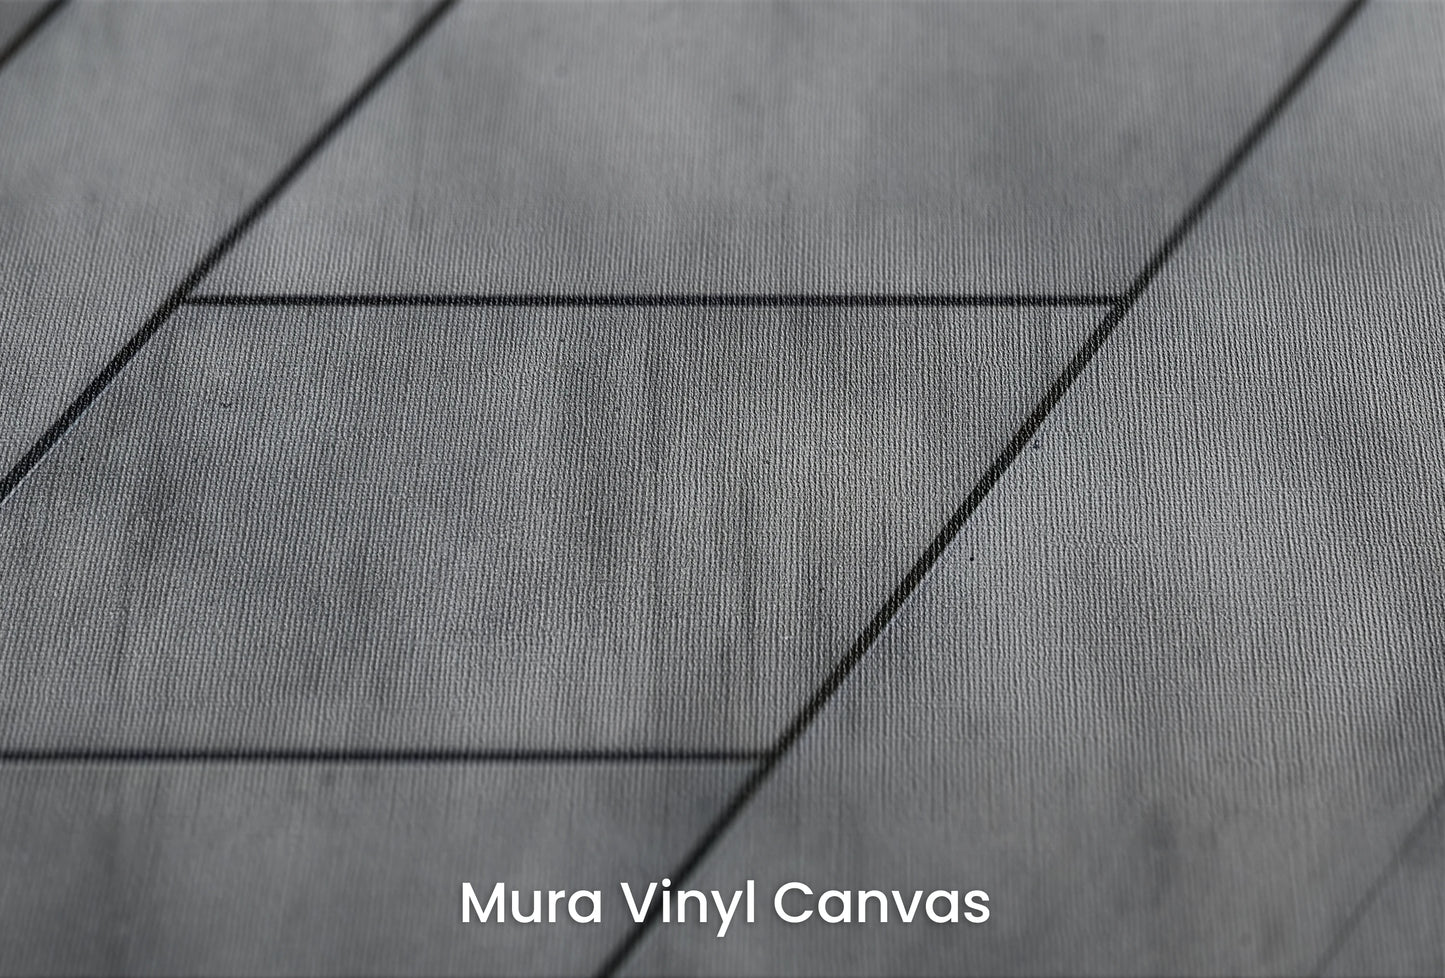 Zbliżenie na artystyczną fototapetę o nazwie Linear Perspective na podłożu Mura Vinyl Canvas - faktura naturalnego płótna.